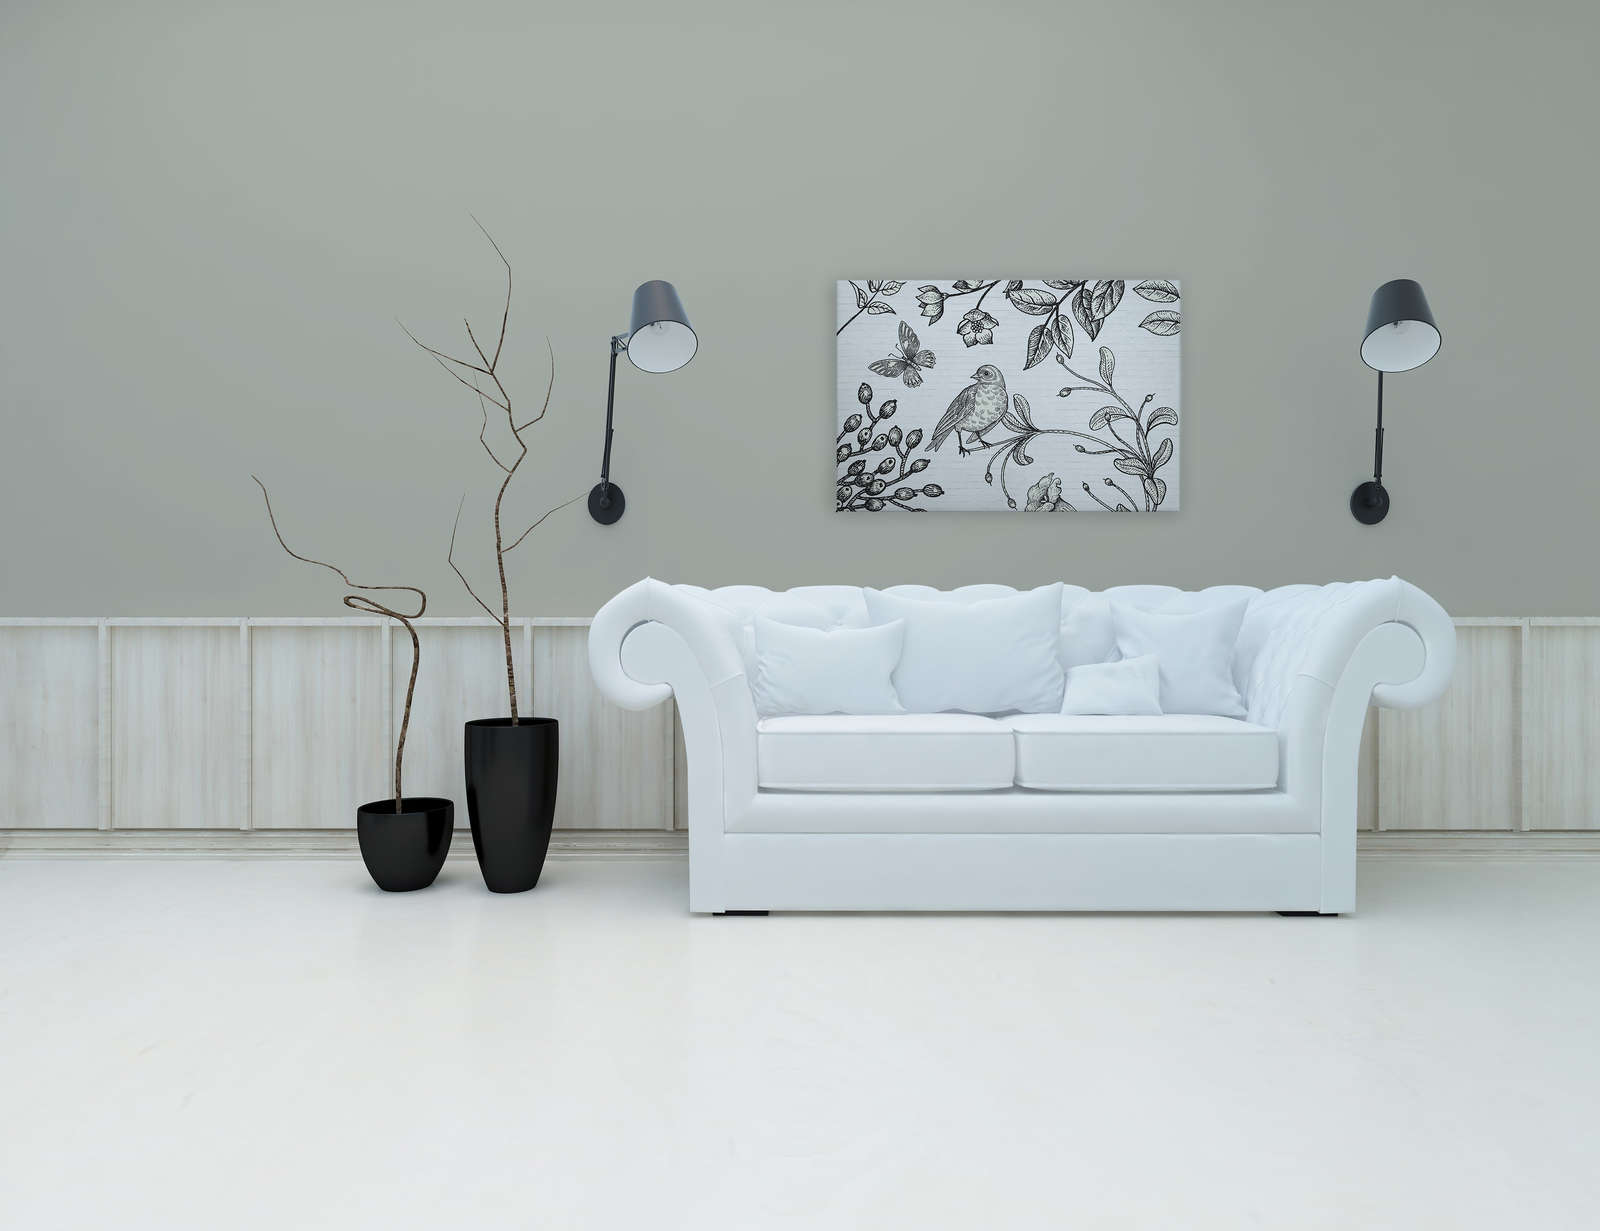             Zwart-wit canvas met natuurmotief in komische look - 0,90 m x 0,60 m
        